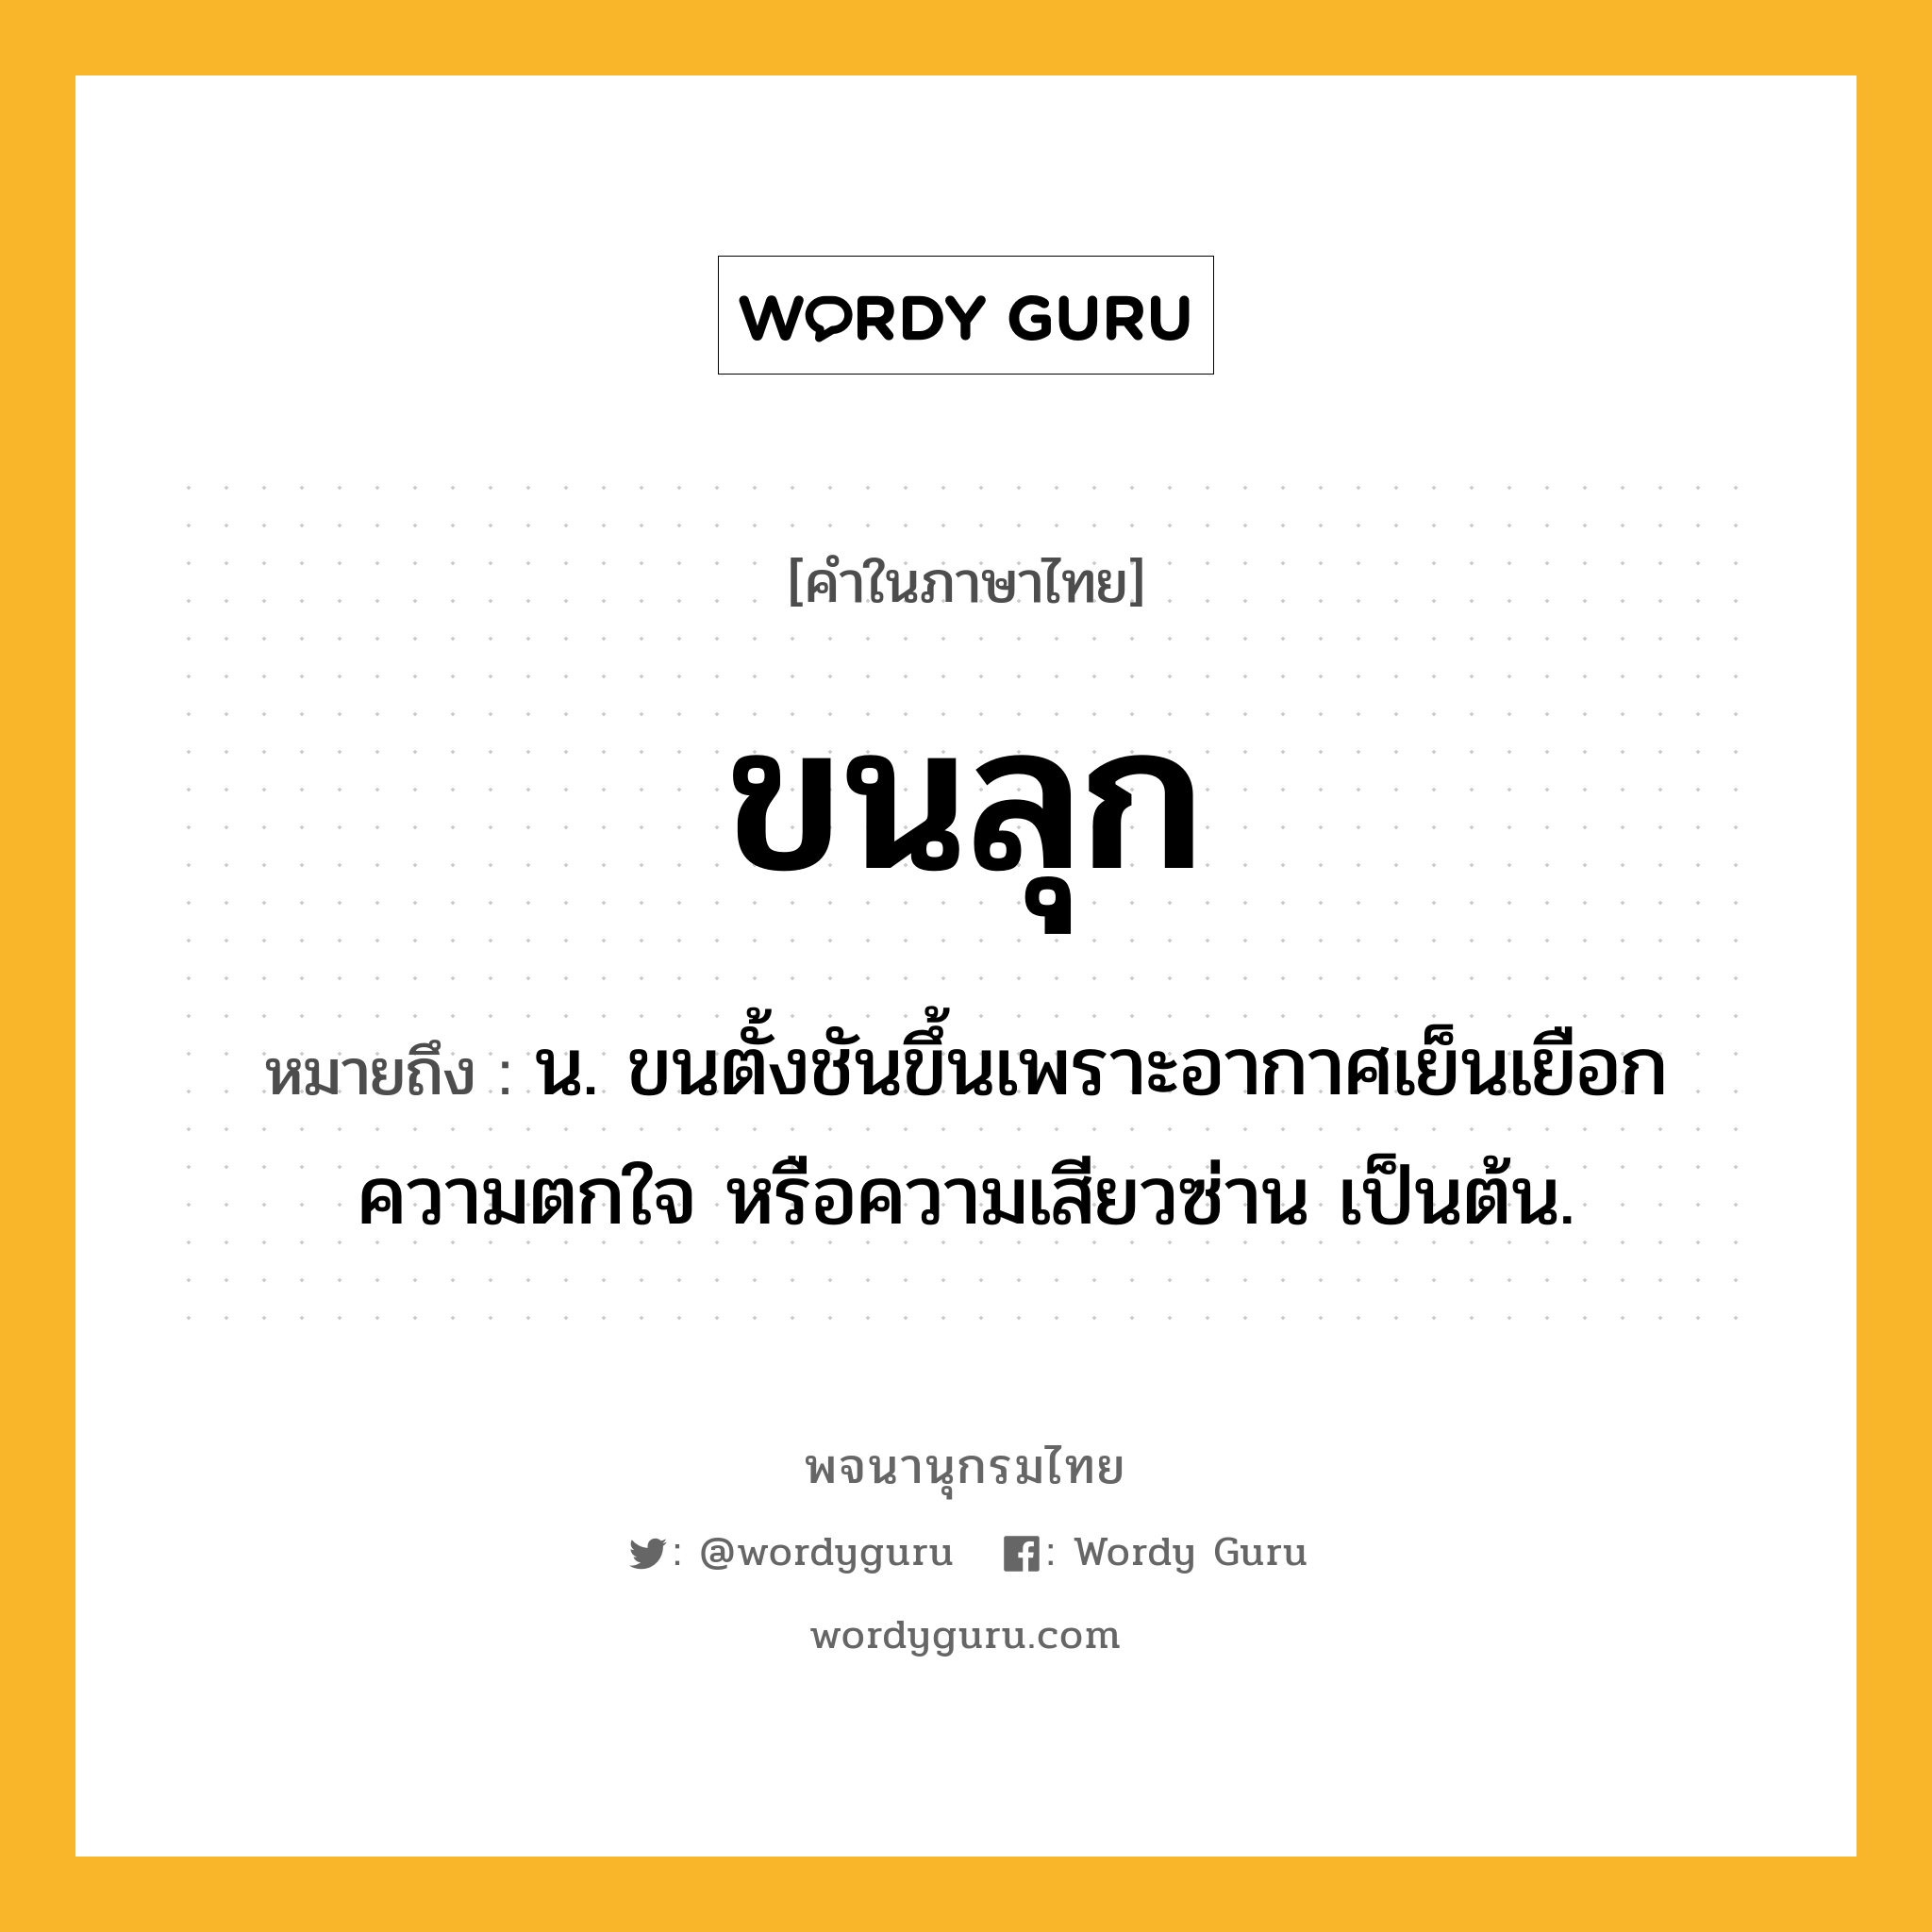 ขนลุก ความหมาย หมายถึงอะไร?, คำในภาษาไทย ขนลุก หมายถึง น. ขนตั้งชันขึ้นเพราะอากาศเย็นเยือก ความตกใจ หรือความเสียวซ่าน เป็นต้น.